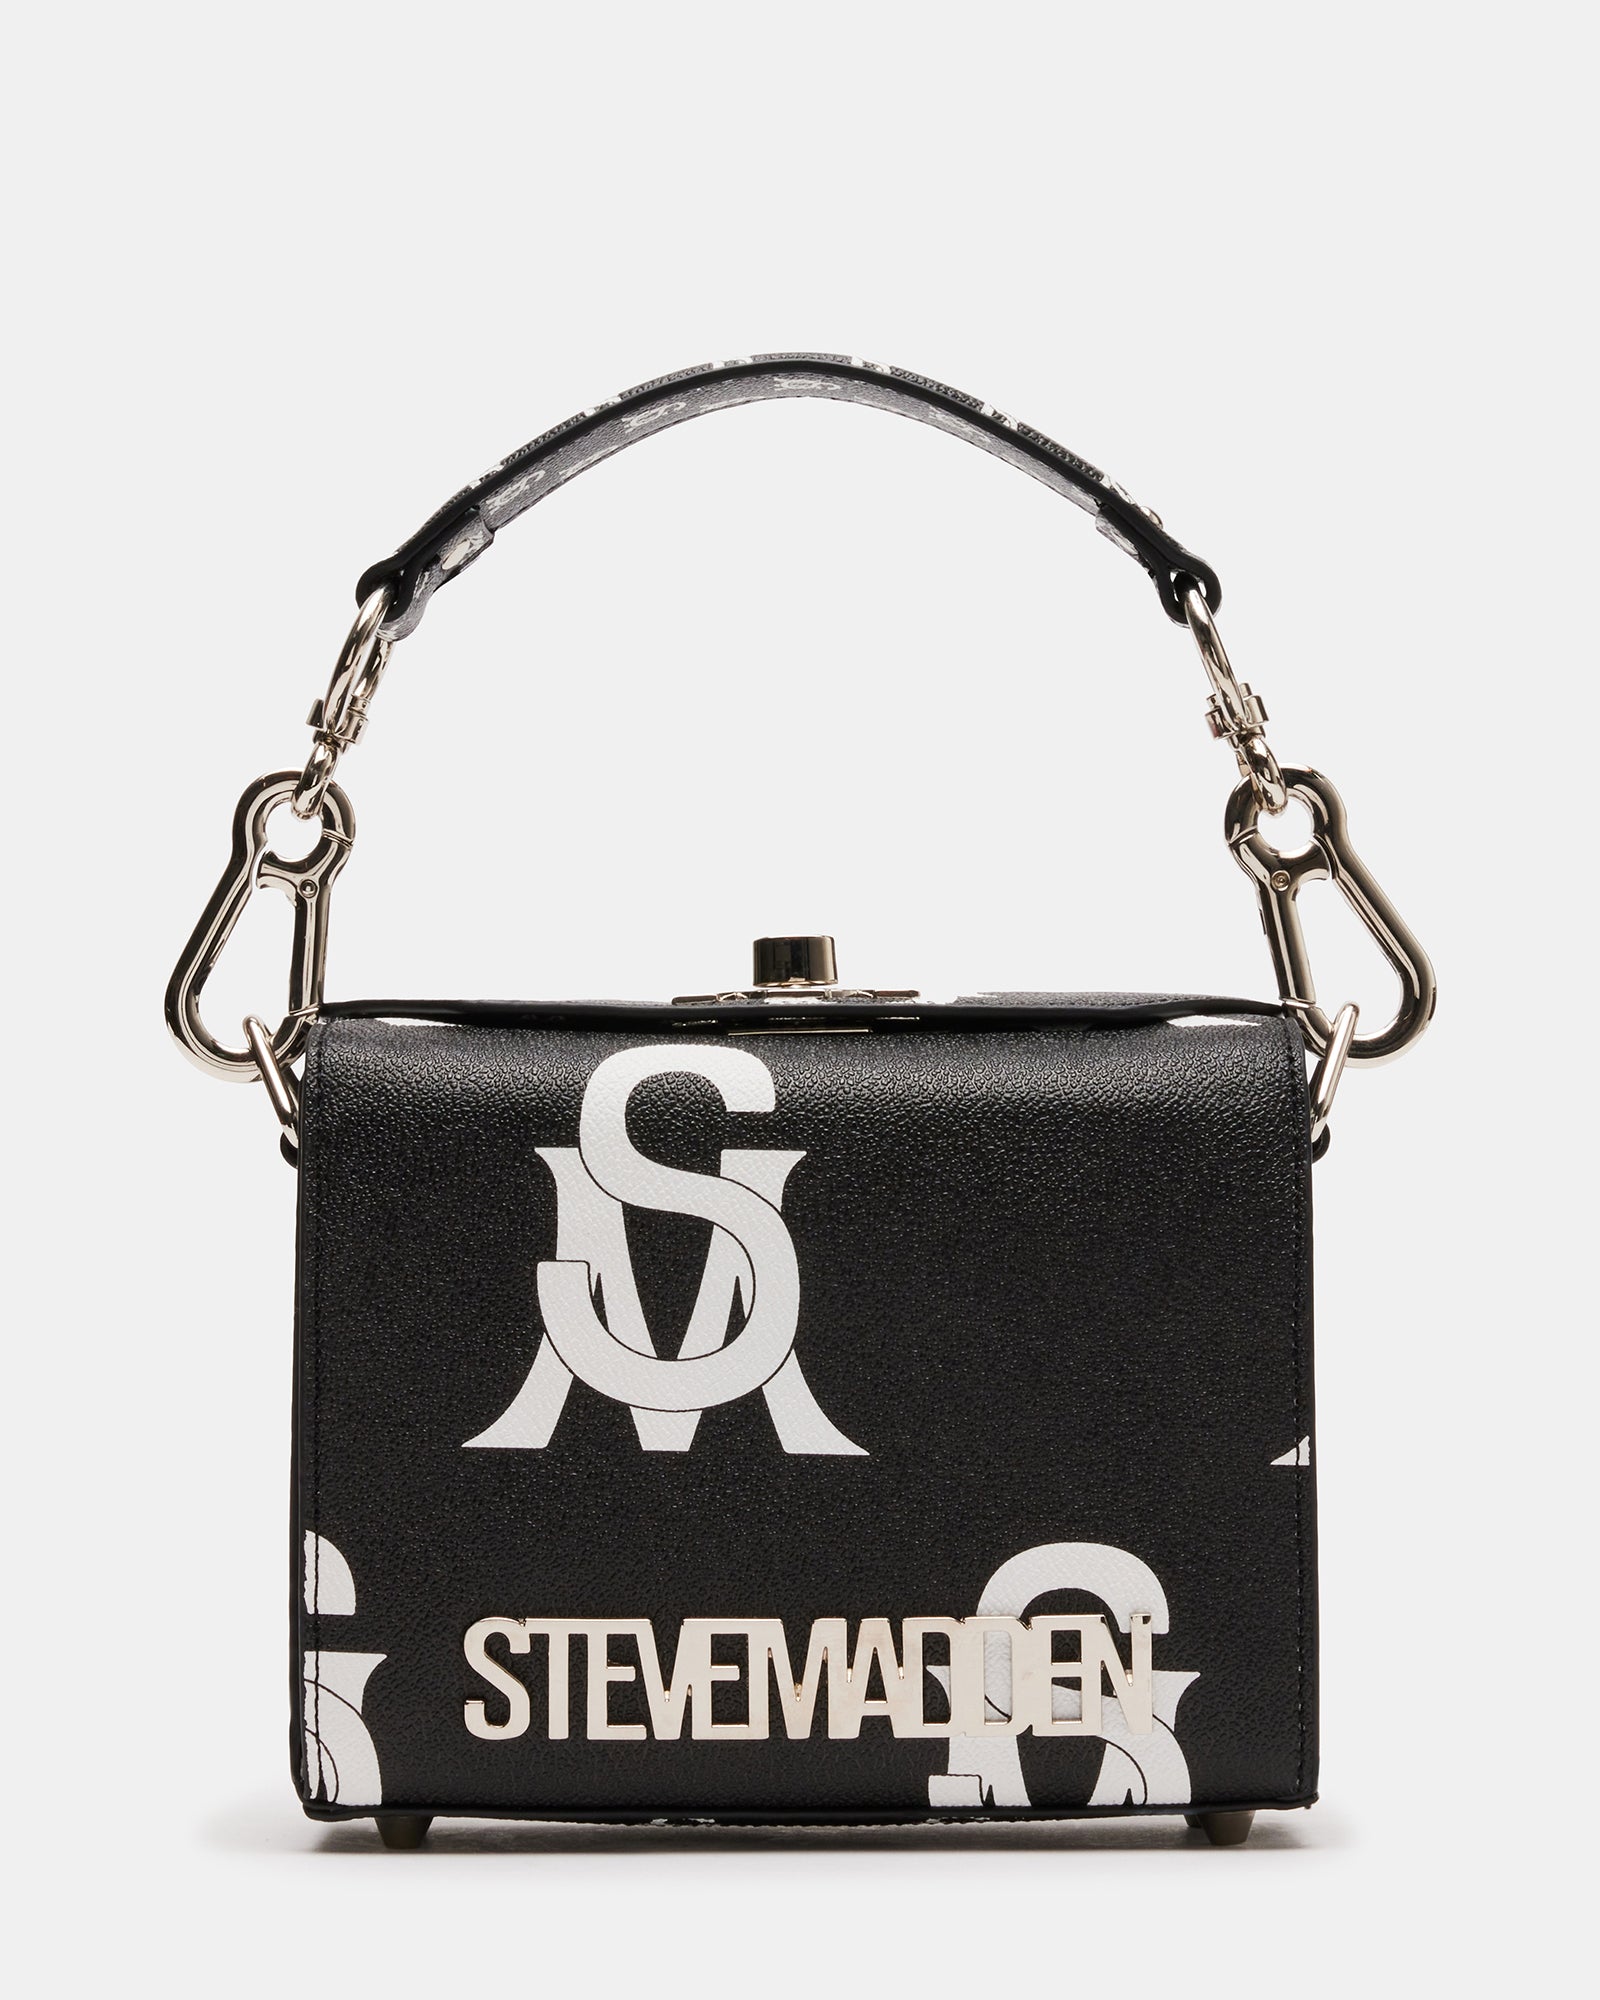 Steve Madden bag | Steve madden bags, Bags, Steve madden